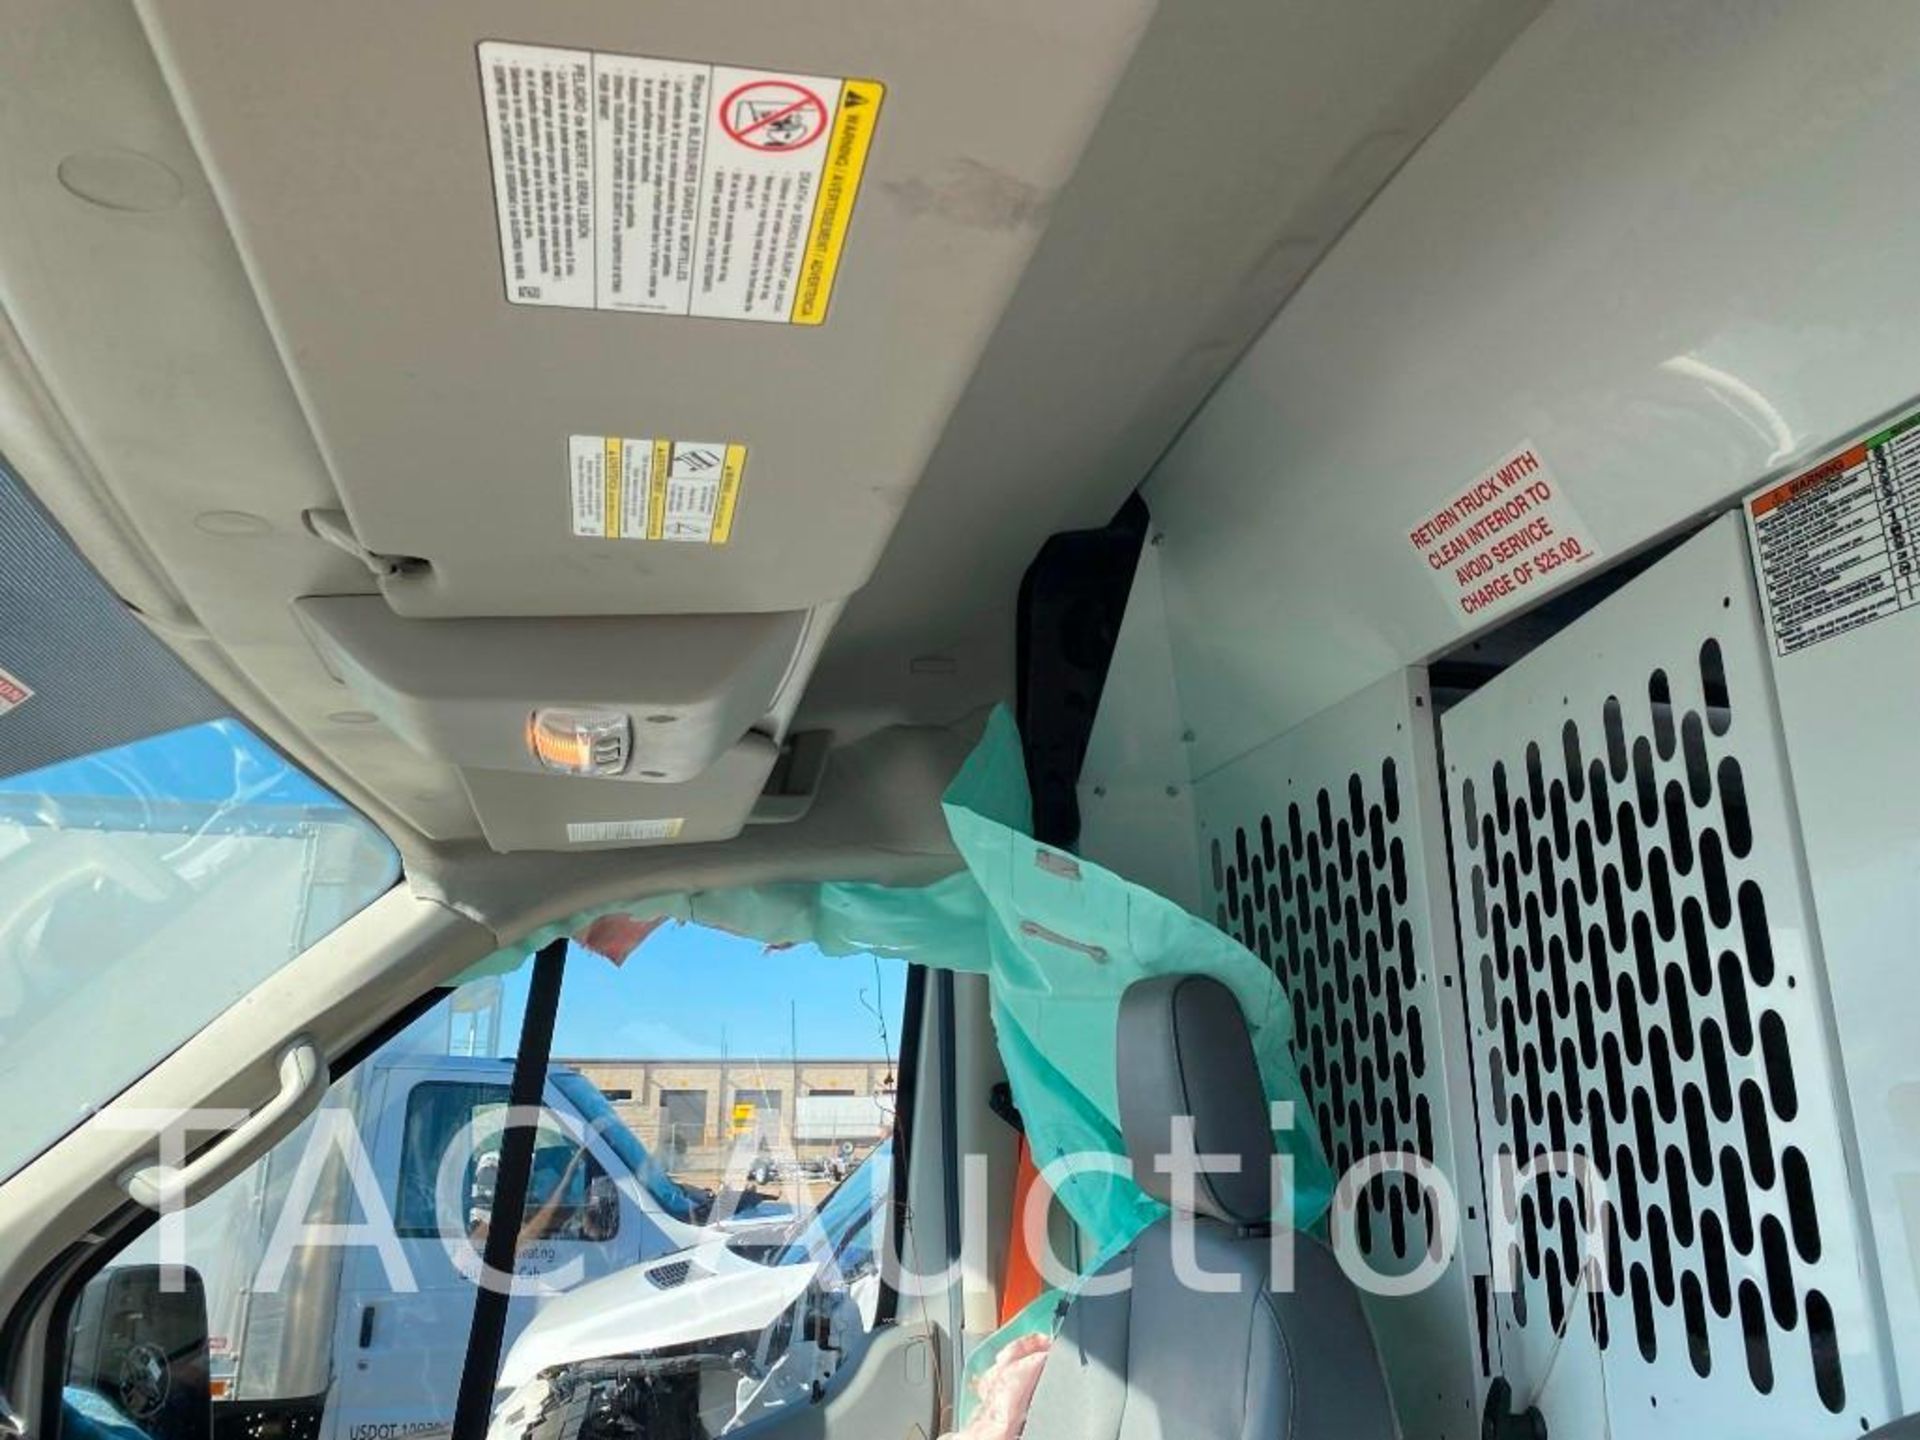 2019 Ford T150 Transit Van - Image 20 of 51